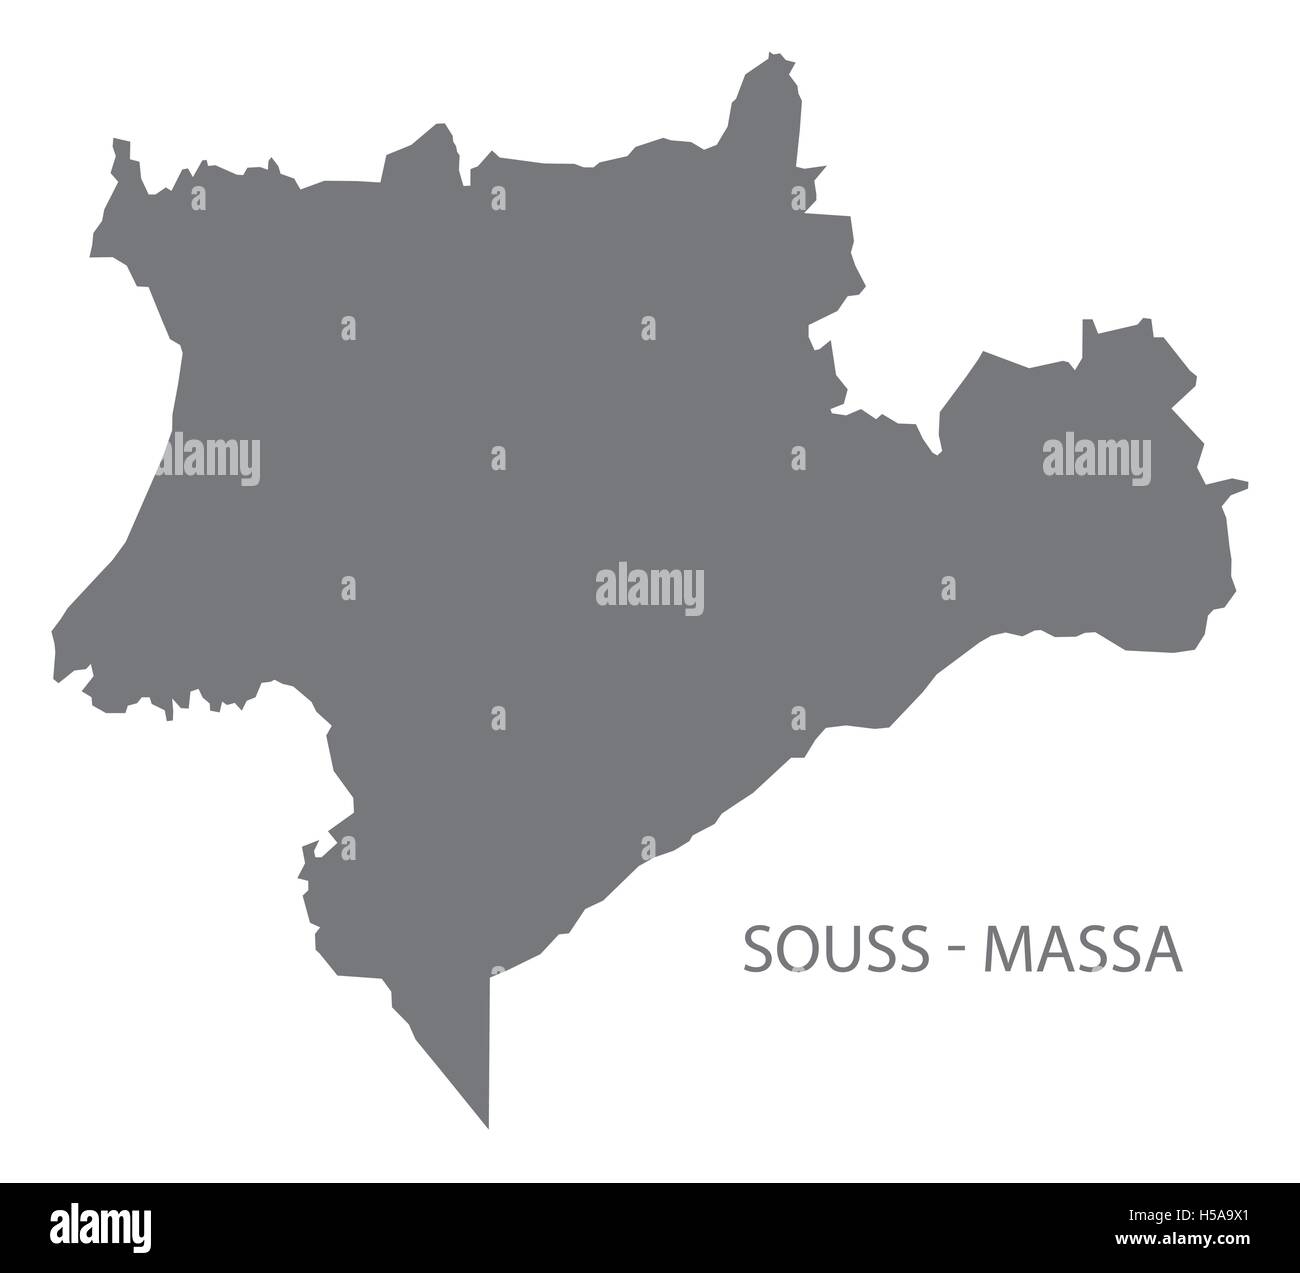 Souss - Massa Morocco Map grey Stock Vector